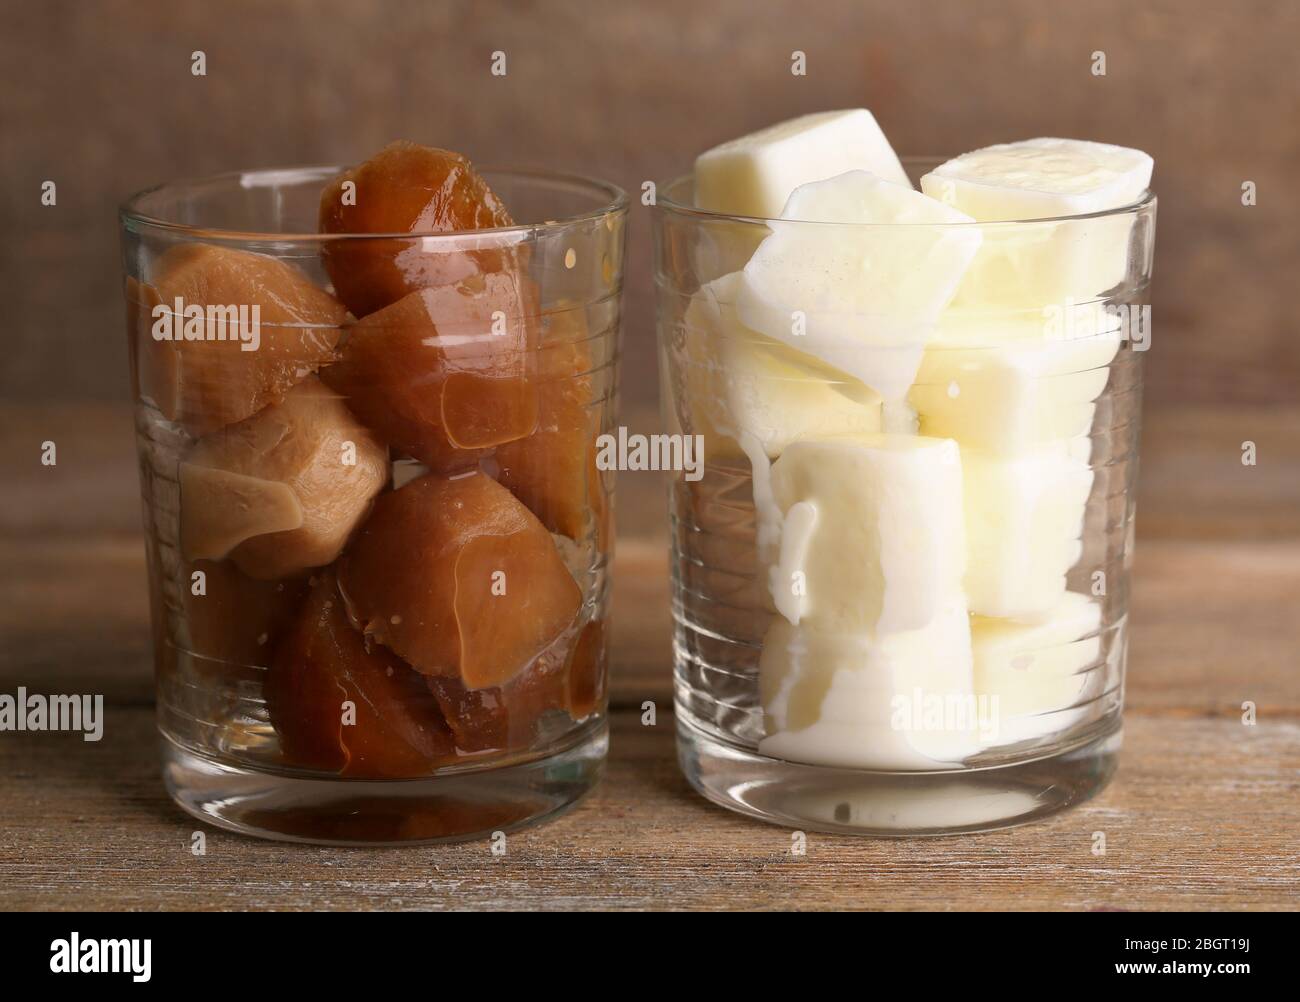 Eiskaffee und milchige Würfel in Glas auf Holzhintergrund Stockfotografie -  Alamy